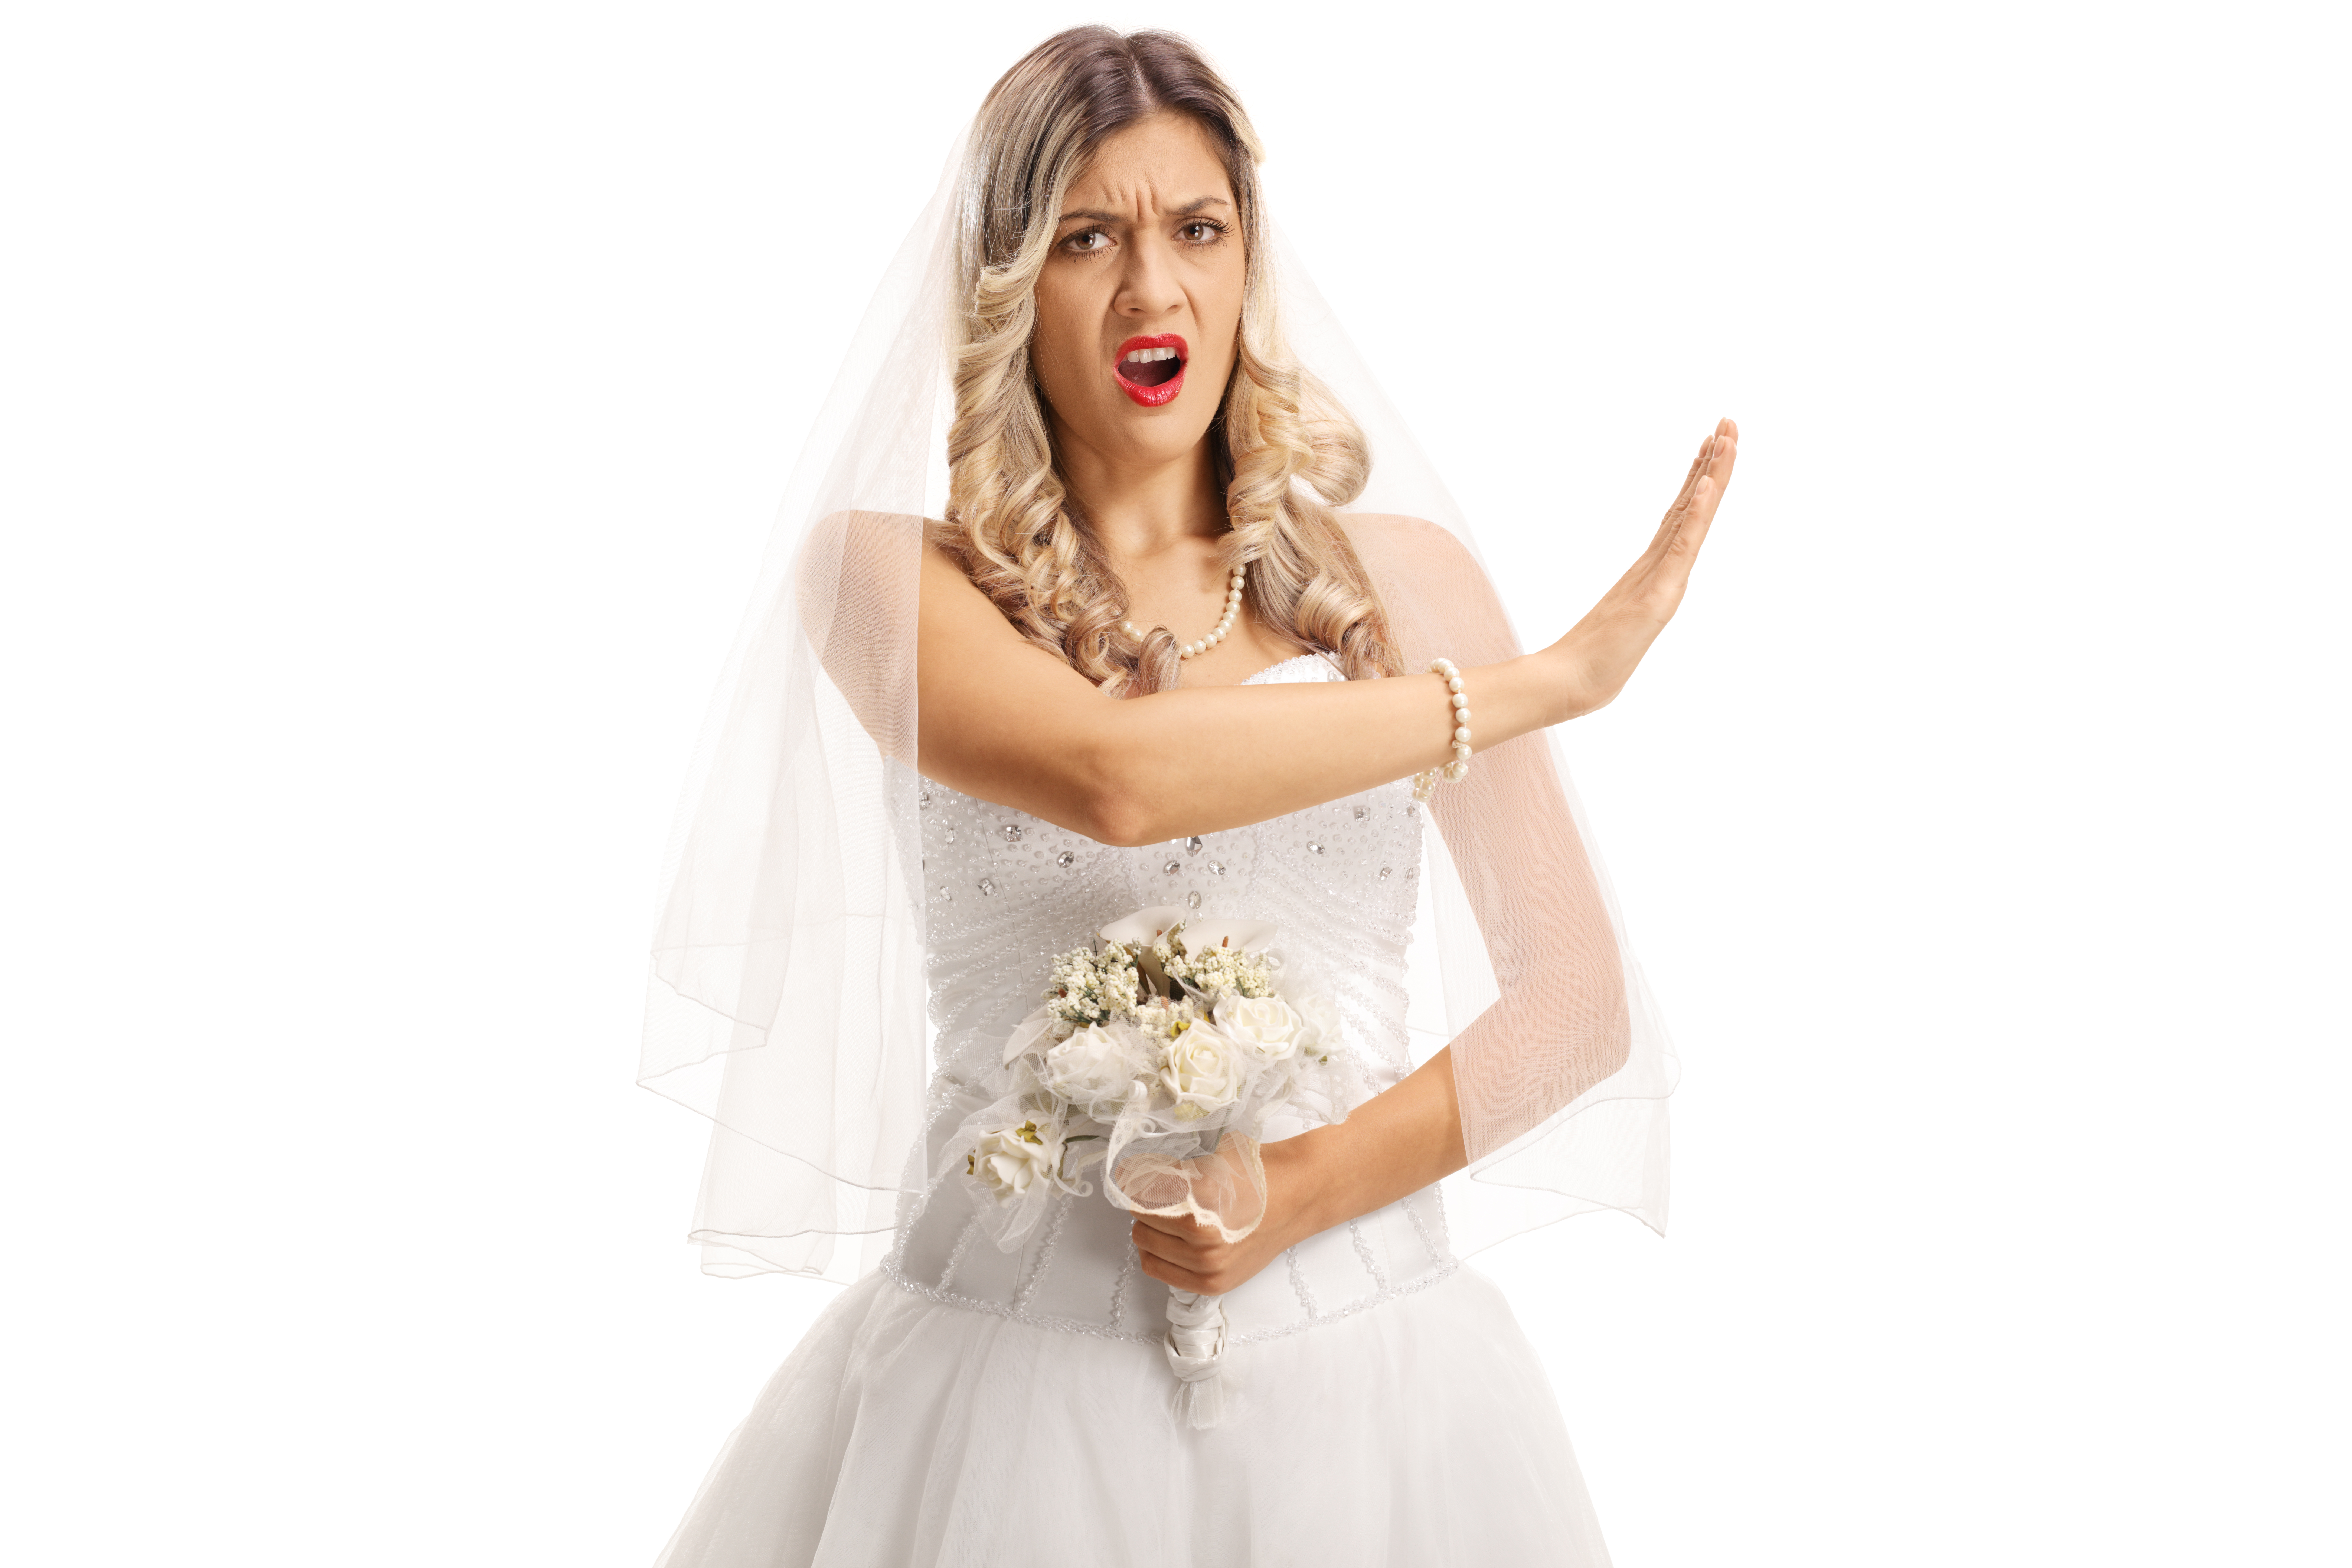 Une mariée en colère faisant le geste "stop" avec sa main | Source : Shutterstock